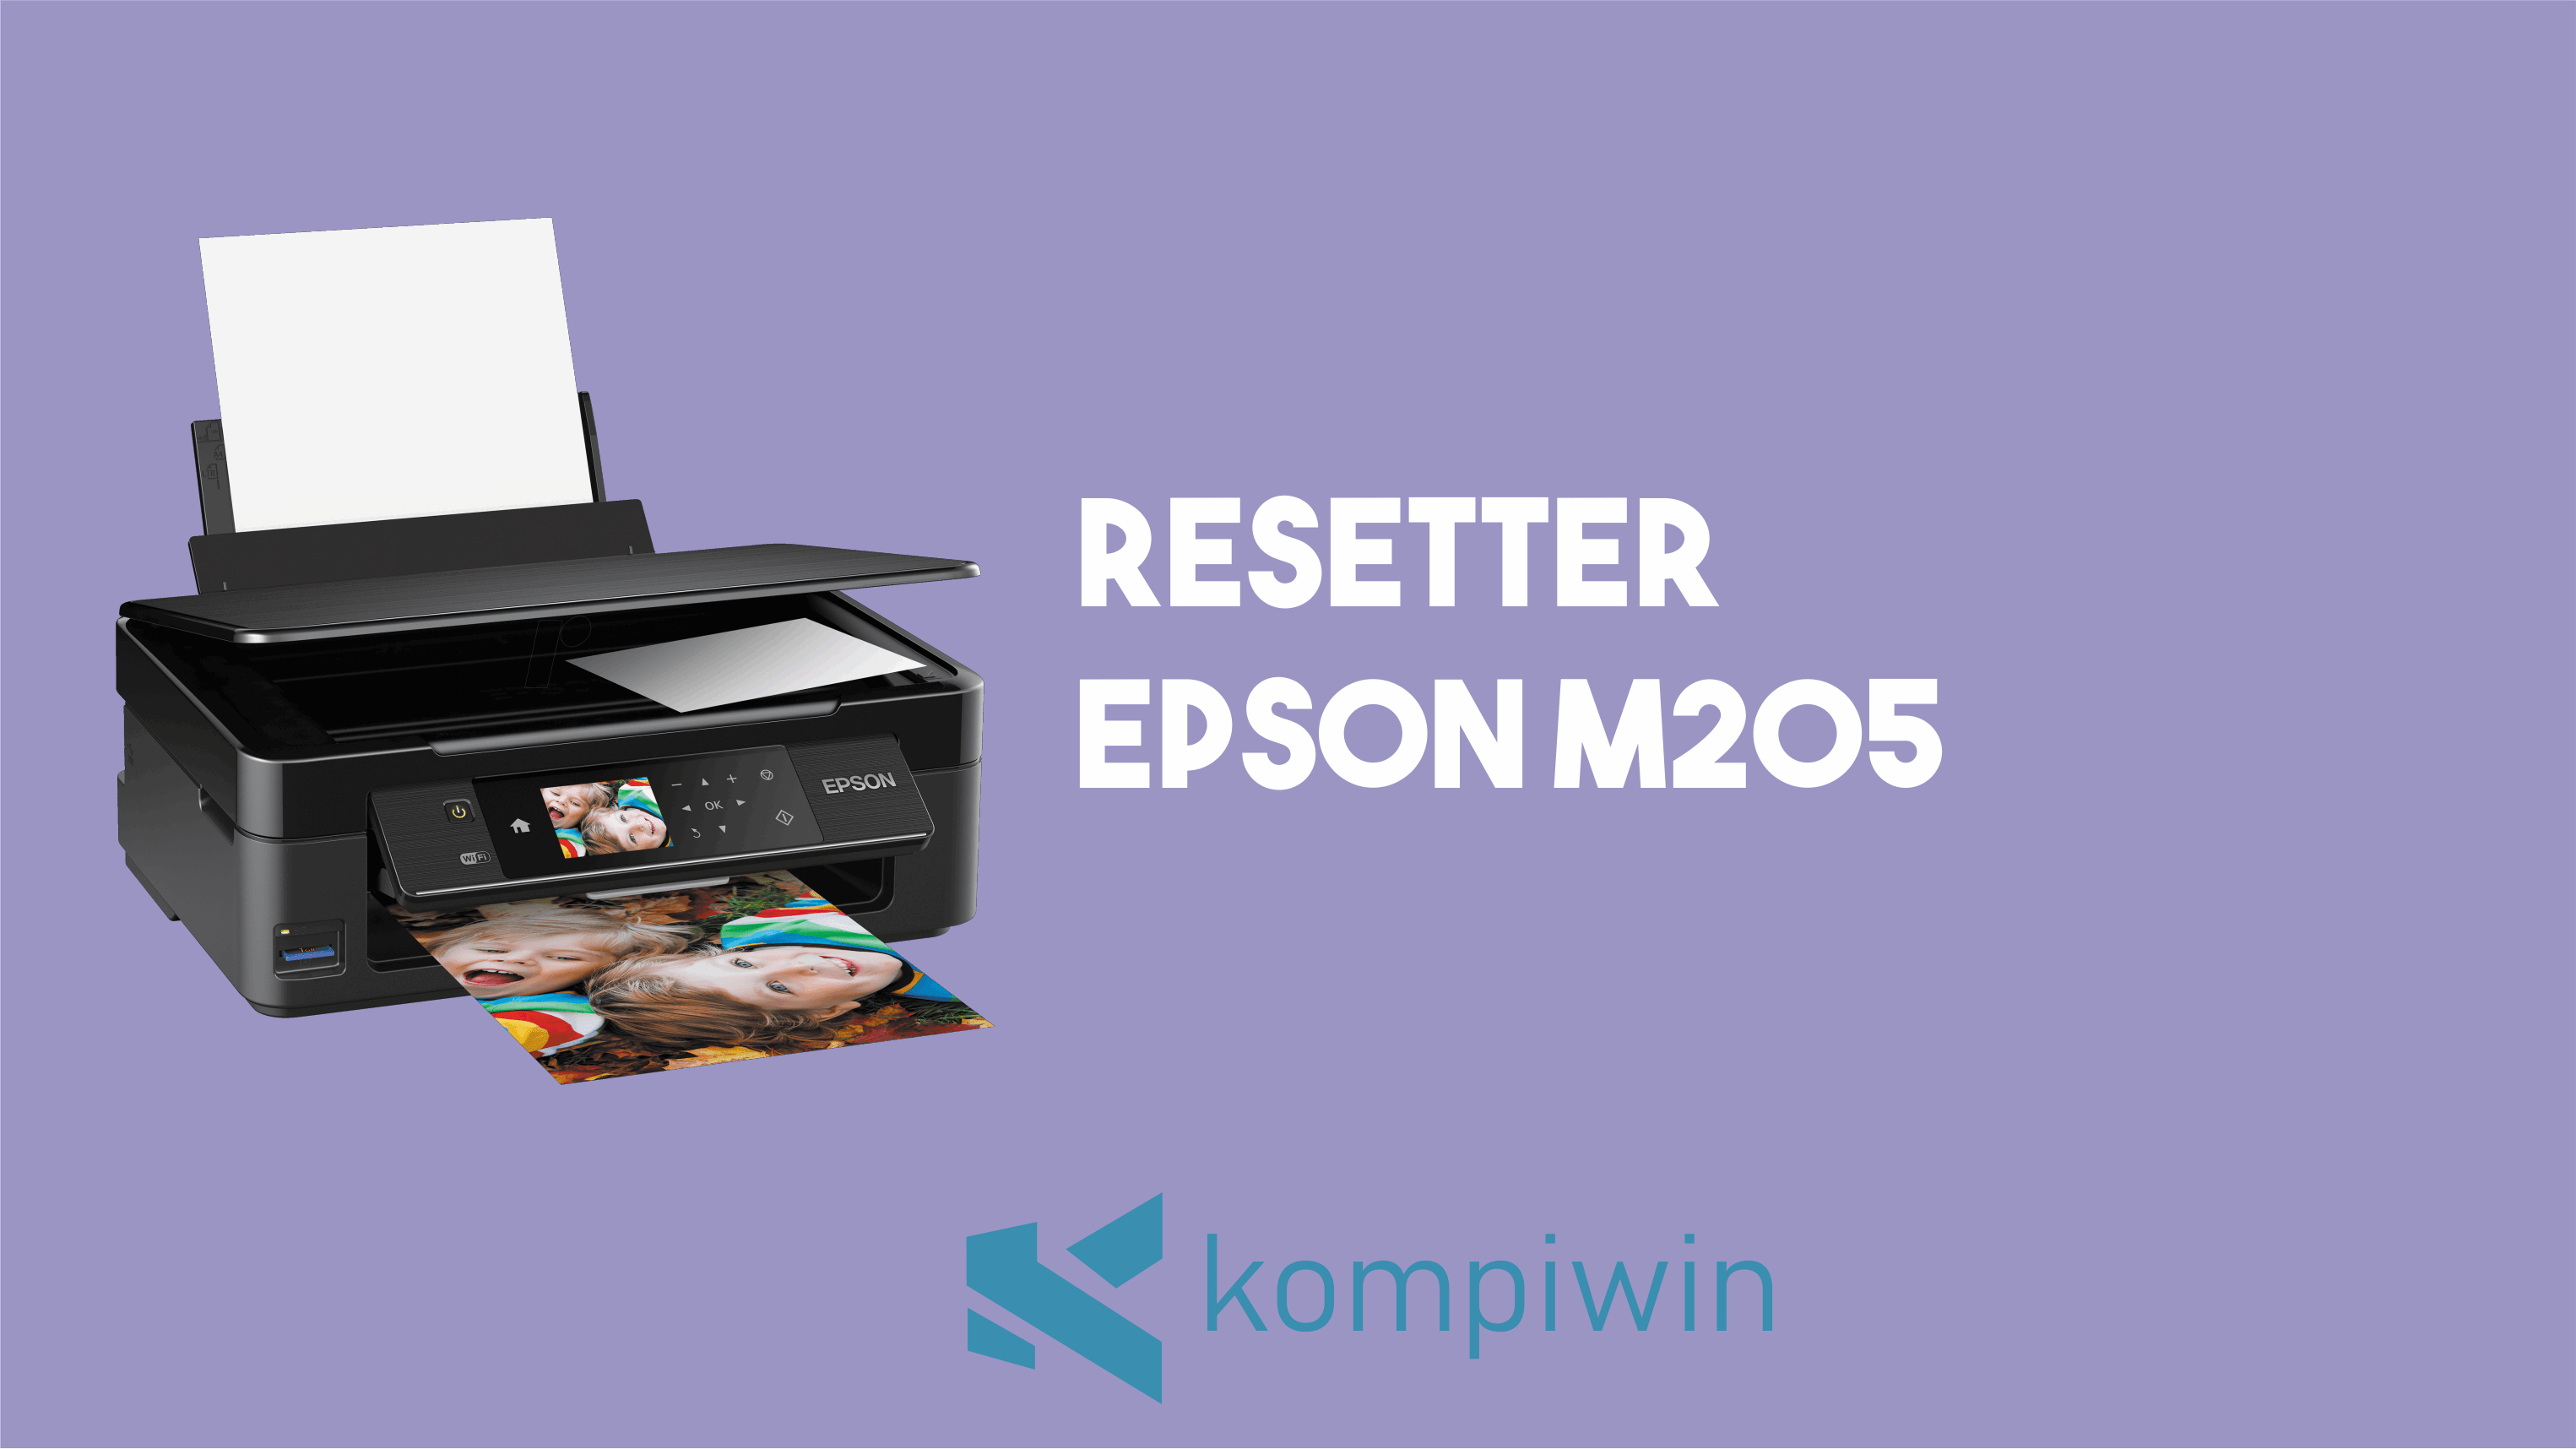 Resetter Epson M205